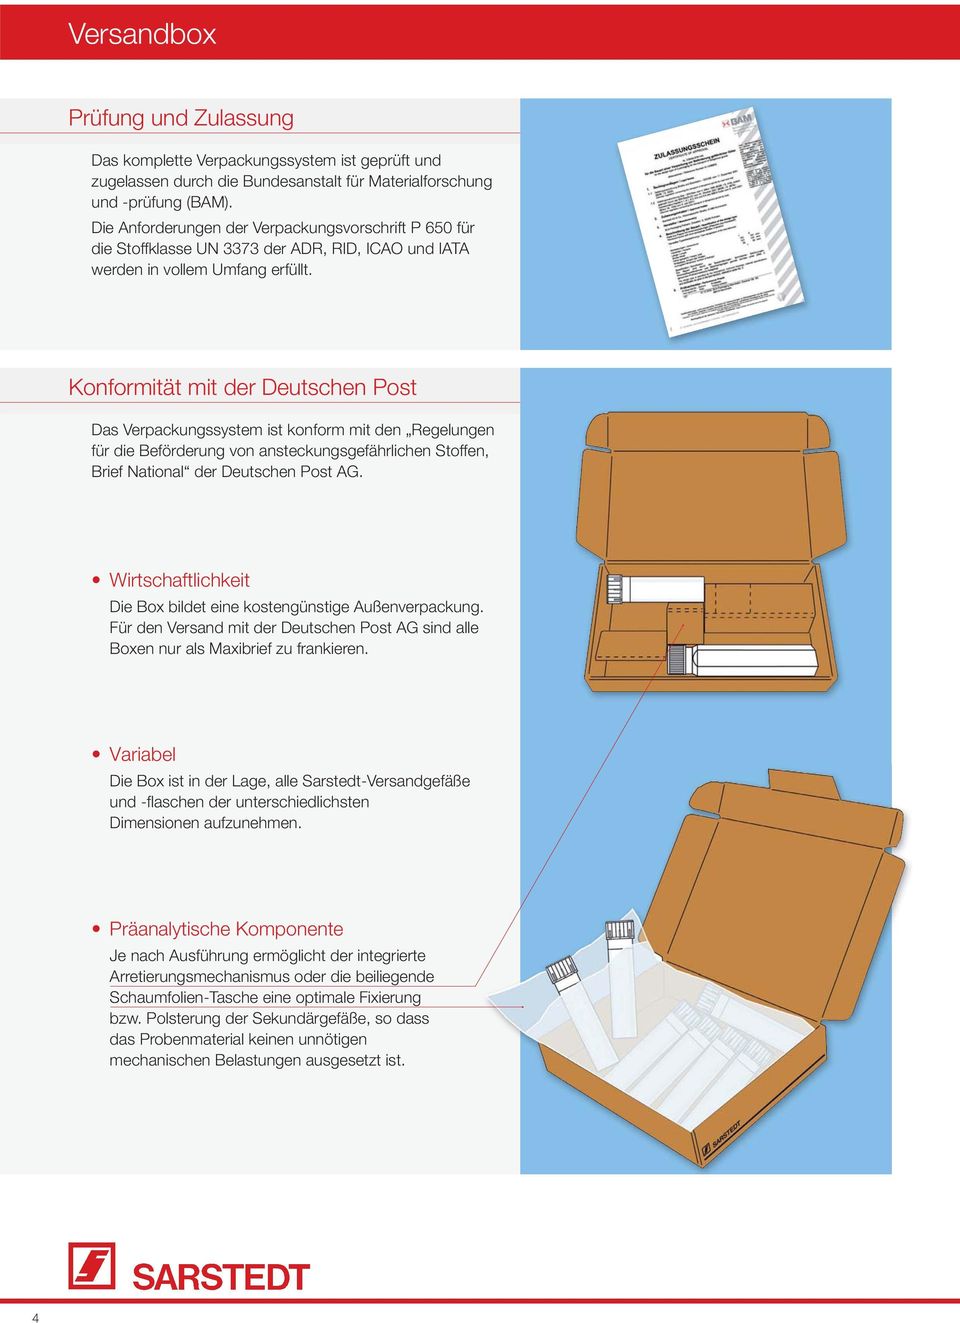 Konformität mit der Deutschen Post Das Verpackungssystem ist konform mit den Regelungen für die Beförderung von ansteckungsgefährlichen Stoffen, Brief National der Deutschen Post AG.